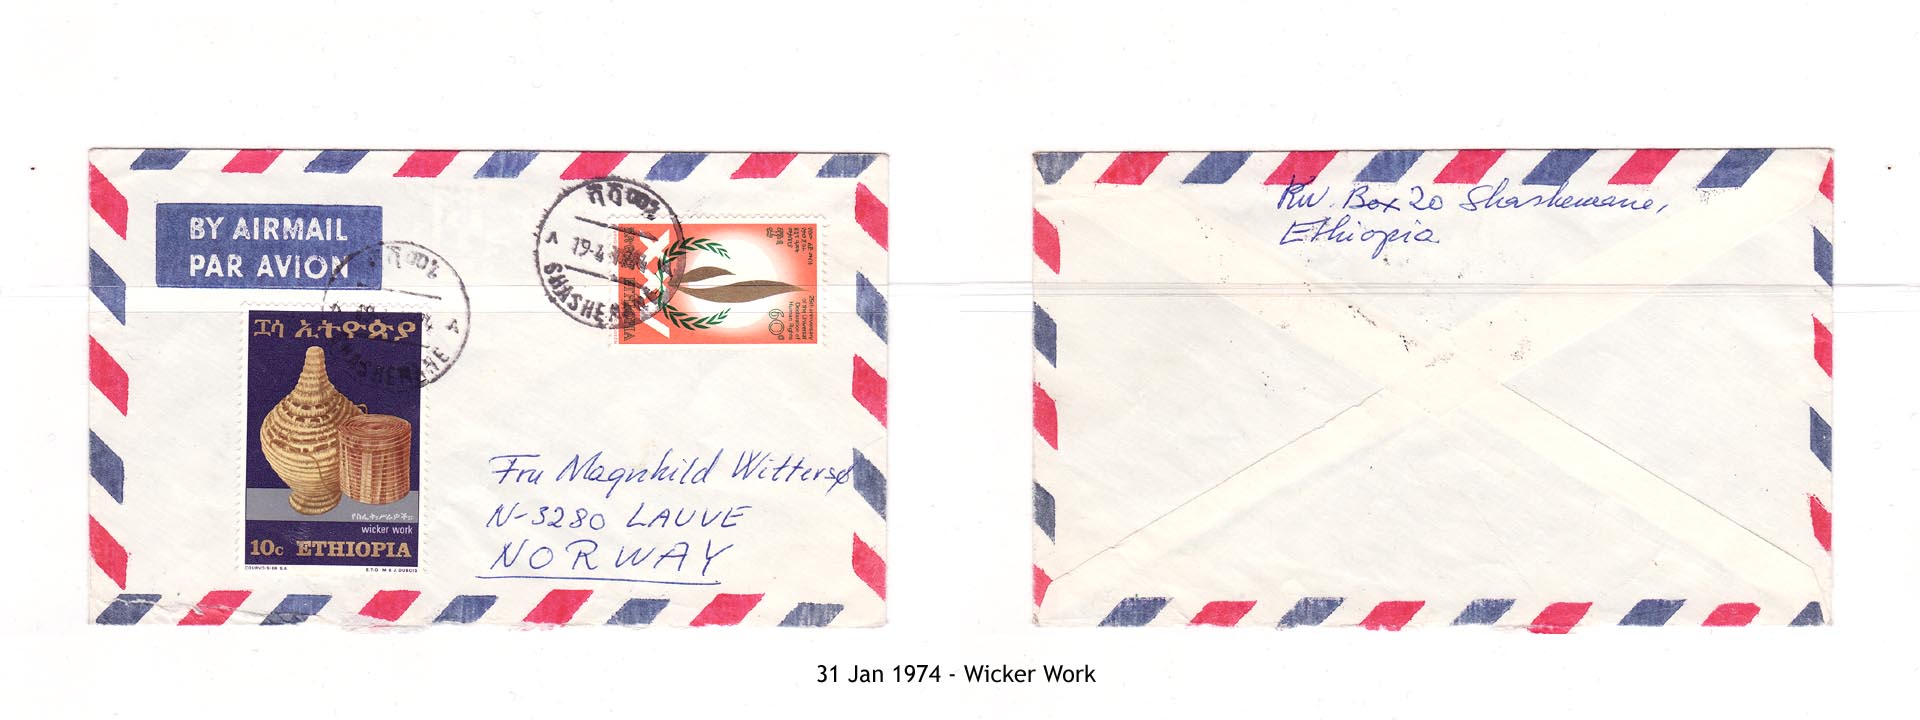 19740131 - Wicker Work